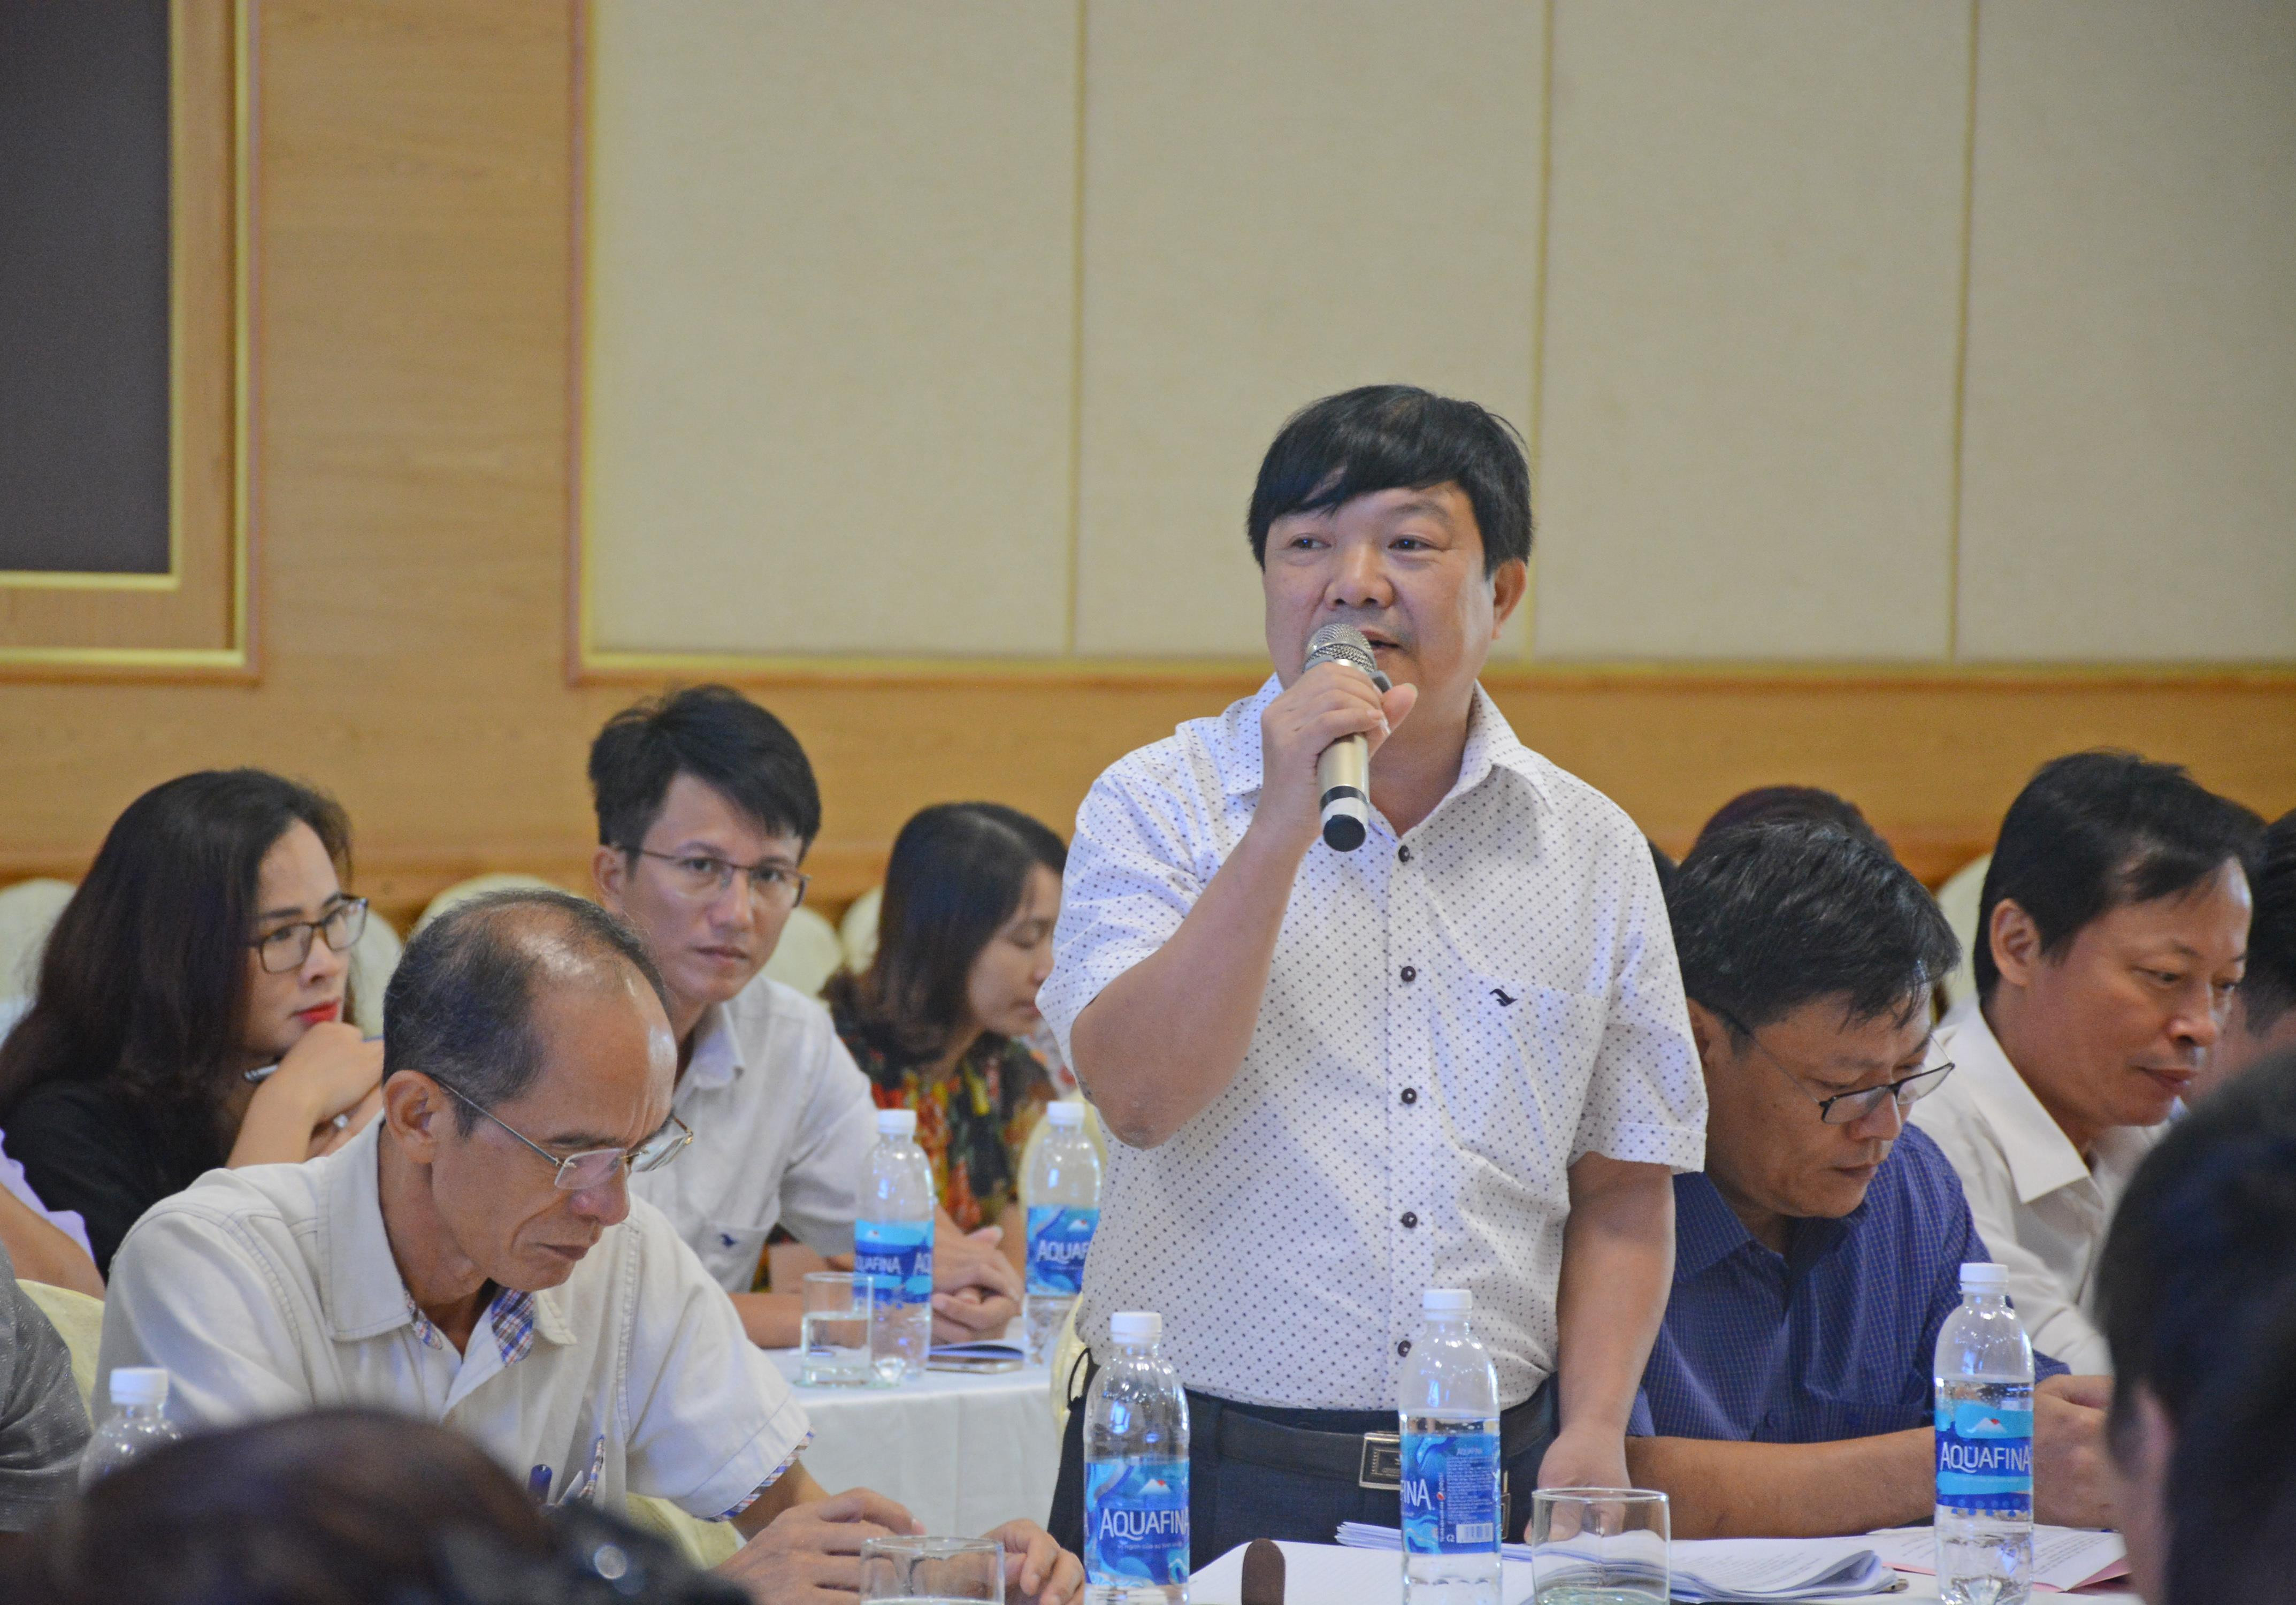 Trưởng Ban Tuyên giáo Huyện ủy Đô Lương Nguyễn Minh Hạnh cho rằng chỉ nên nhất thể hóa chức danh người đứng đầu, không nên đưa trung tâm bồi dưỡng chính trị thành bộ phận của ban tuyên giáo vì khác chức năng, nhiệm vụ hoạt động.